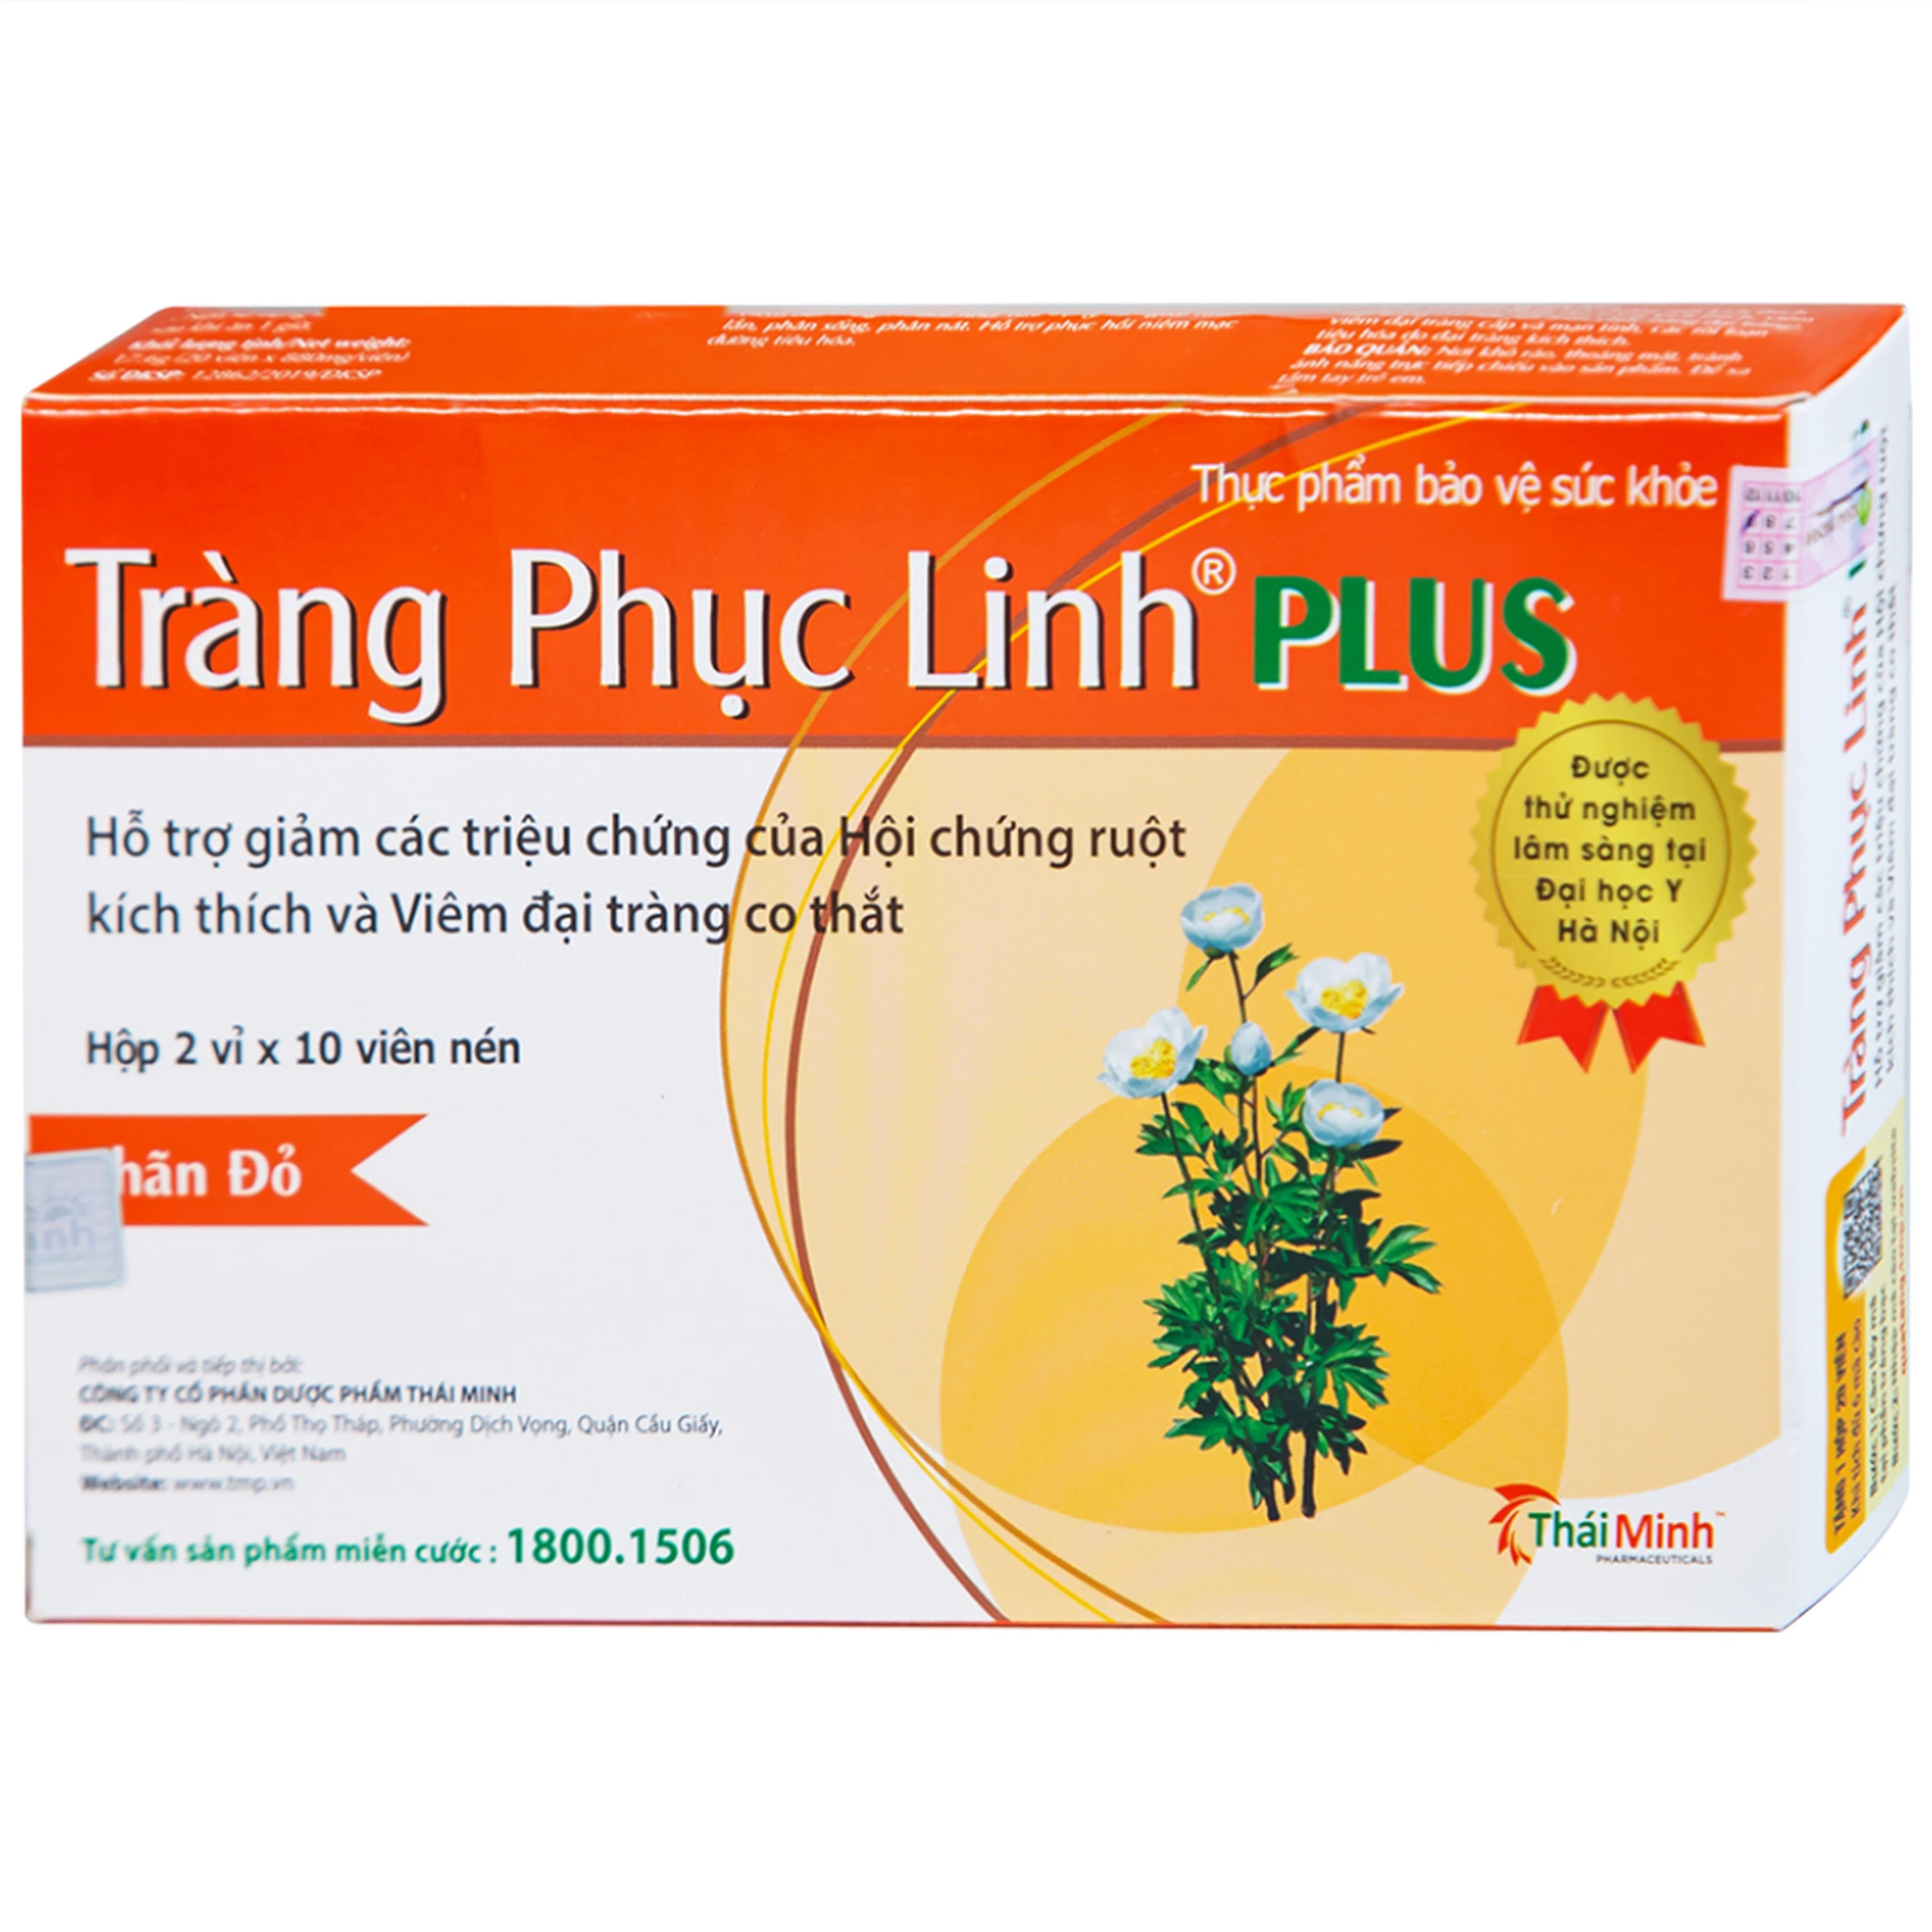 Viên uống Tràng Phục Linh Plus Thái Minh hỗ trợ giảm các triệu chứng của hội chứng ruột (2 vỉ x 10 viên)